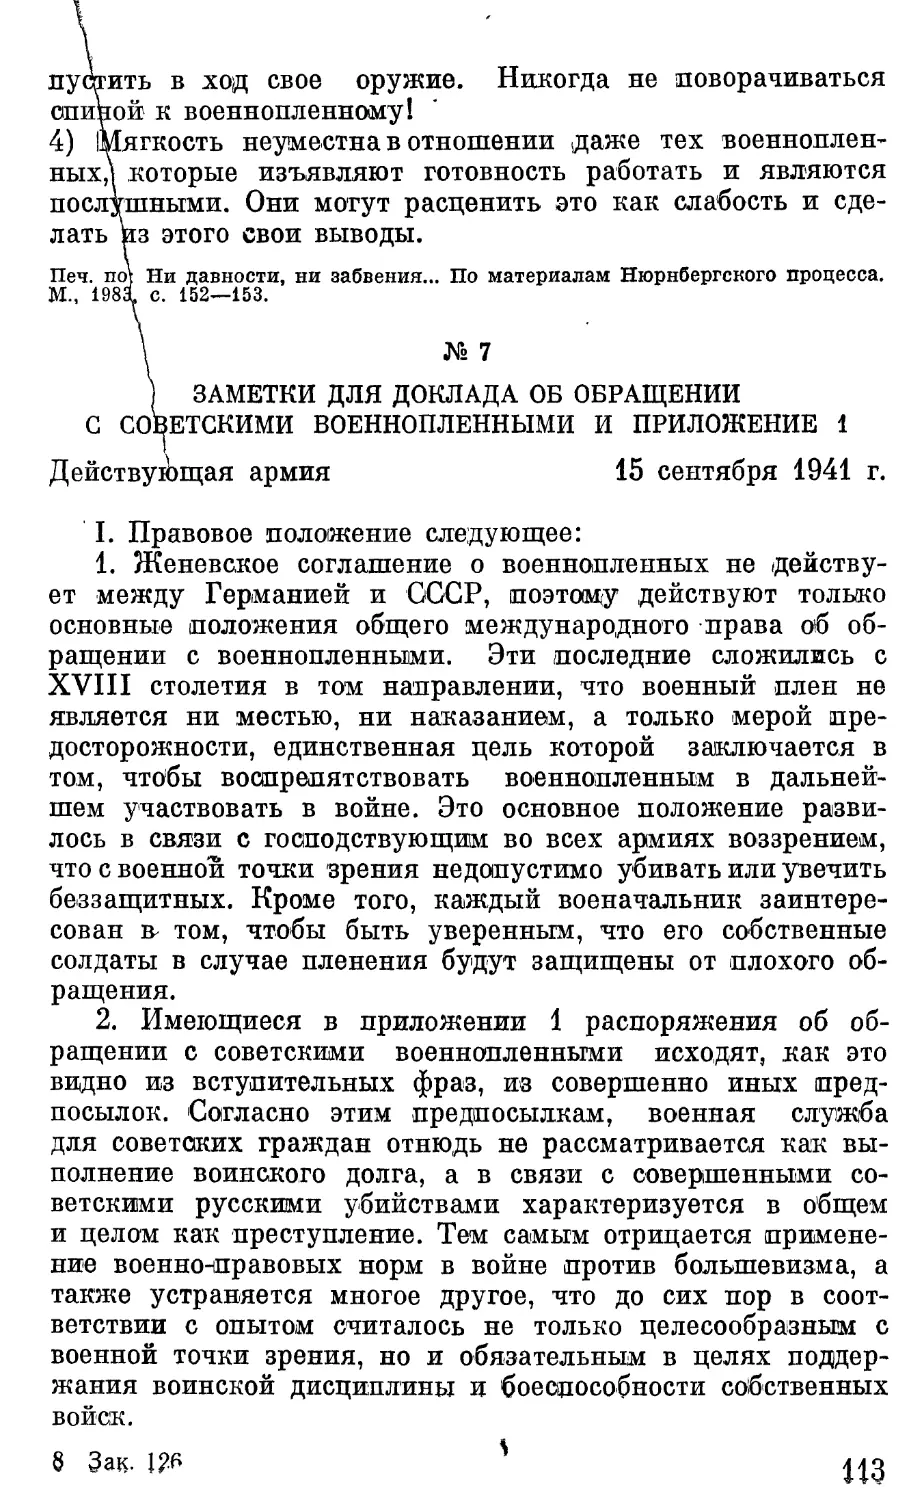 Заметки для доклада об обращении с советскими военнопленными.